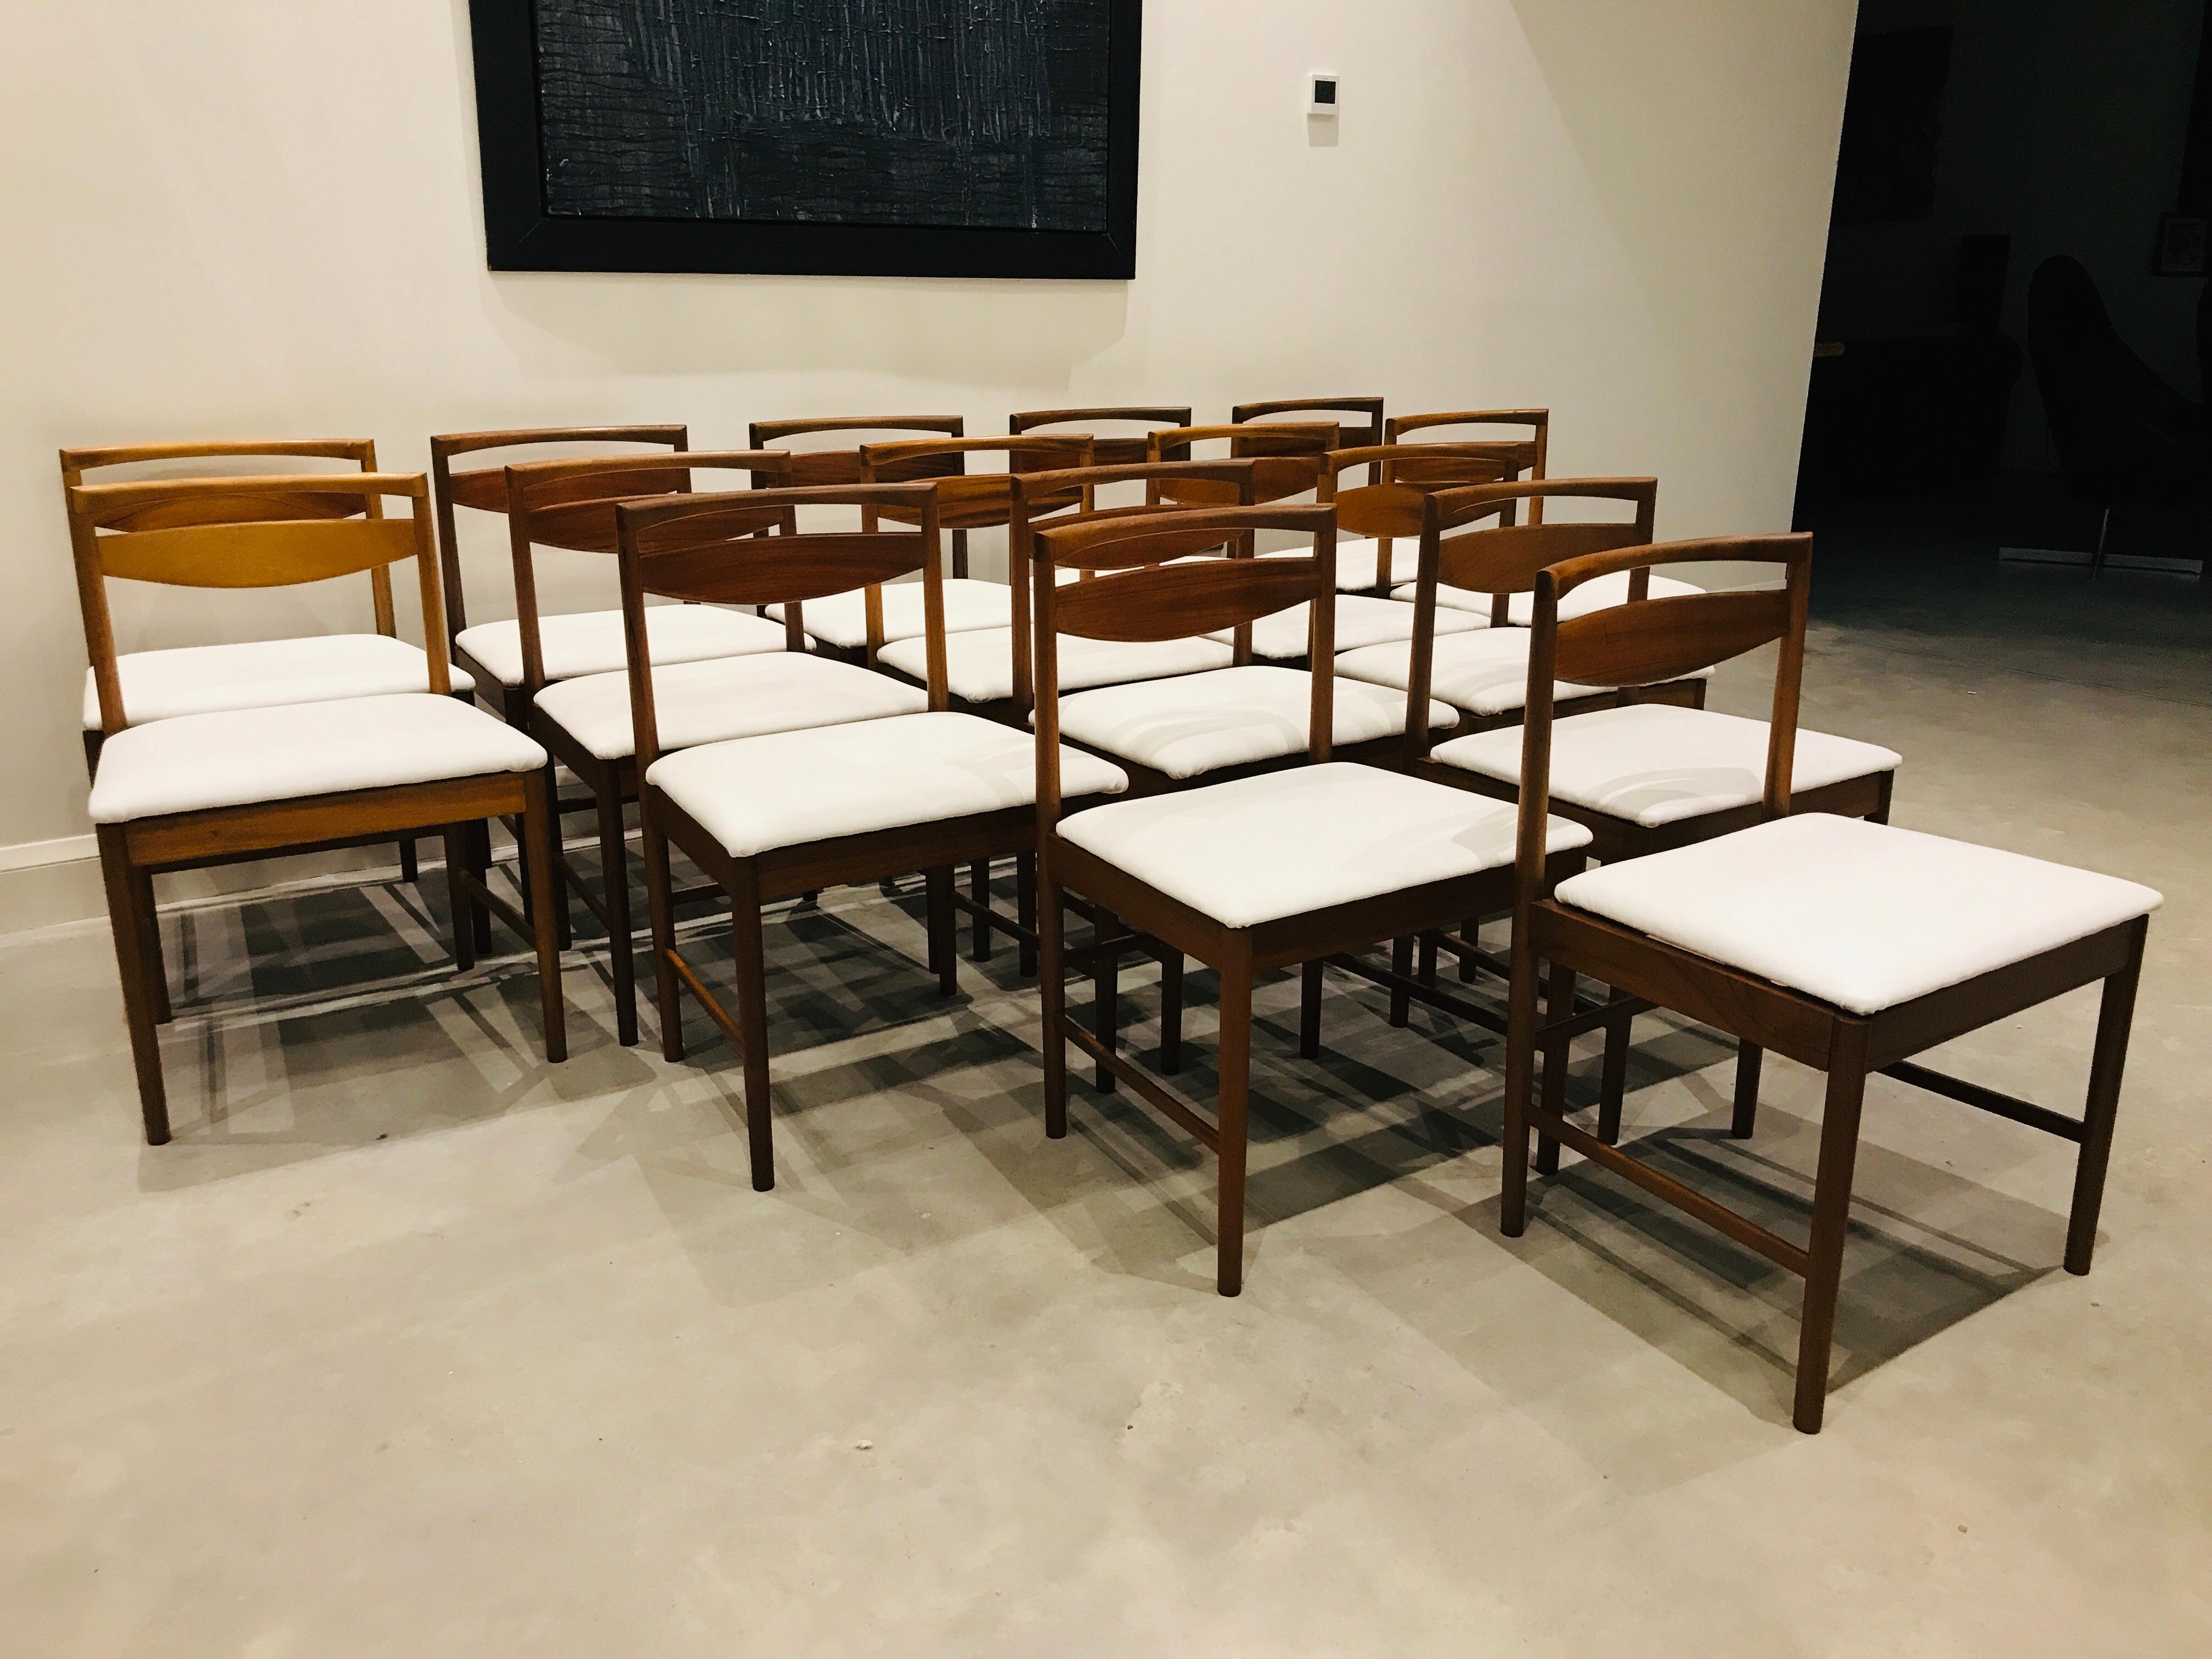 Teck de McIntosh 

Magnifique ensemble de chaises, McIntosh a fait et conçu des chaises, l'un des meilleurs fabricants de meubles d'époque des années 1960 ! Les chaises sont tapissées dans un beau cuir blanc. Nous avons actuellement 8 chaises